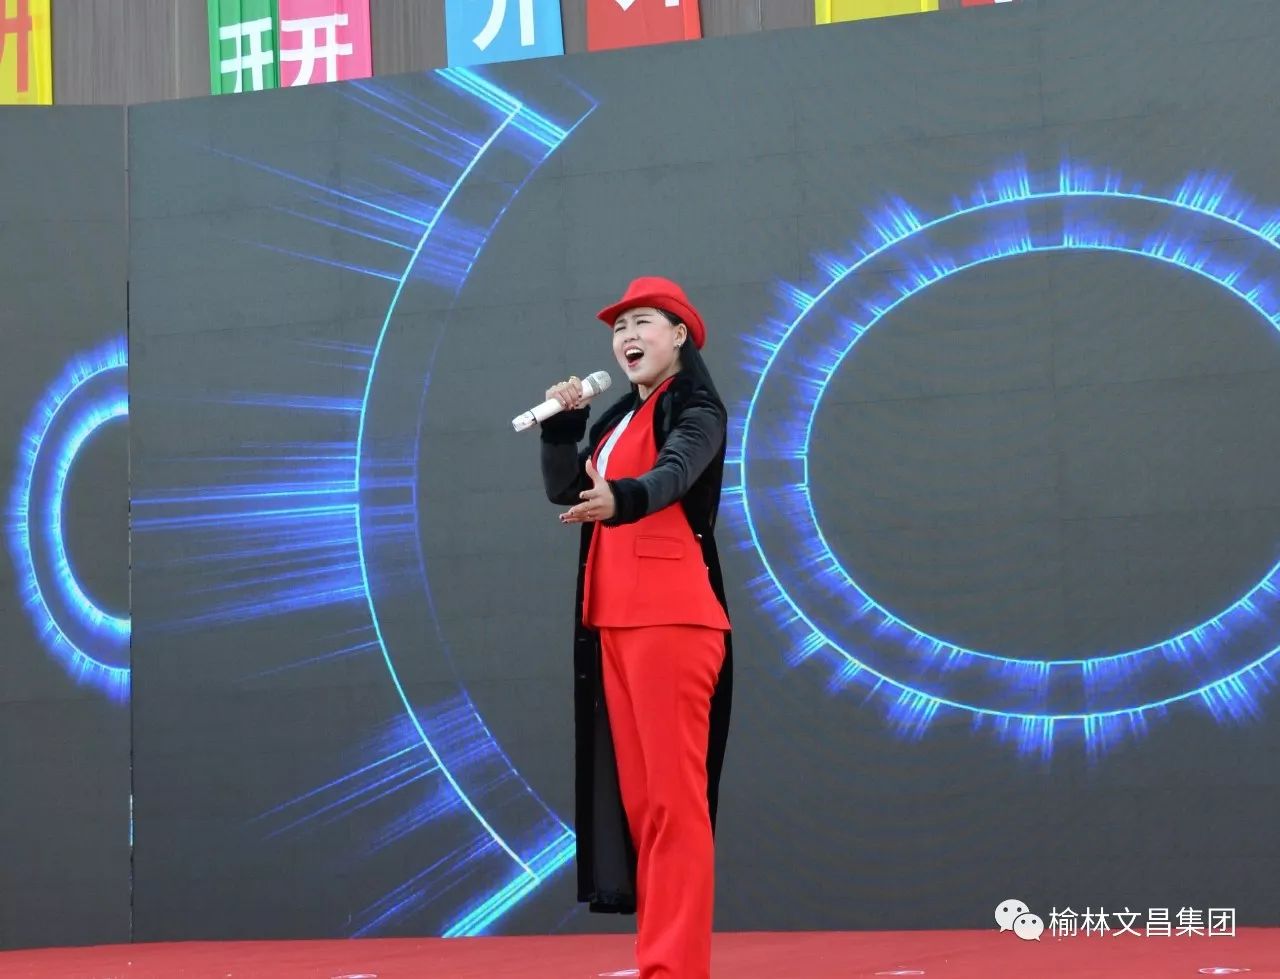 和顺琴行音乐体验中心演出主持人白奎和刘晓斌盛装开业开业仪式视频